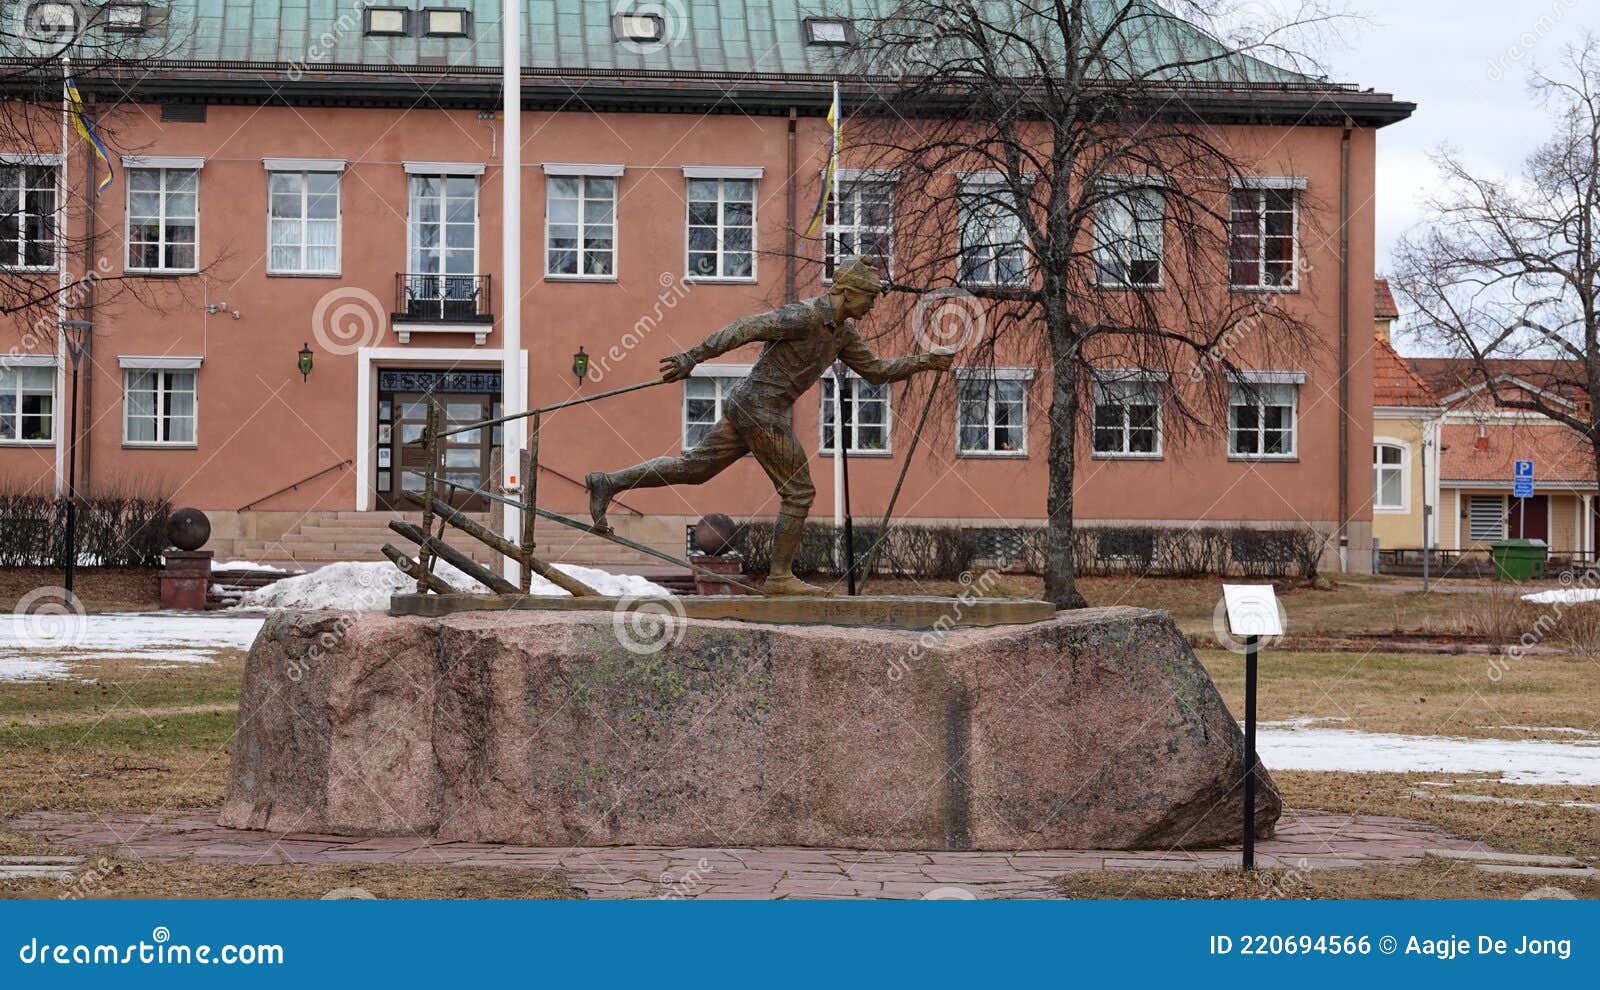 vasaloppet statue in mora in dalarna in sweden